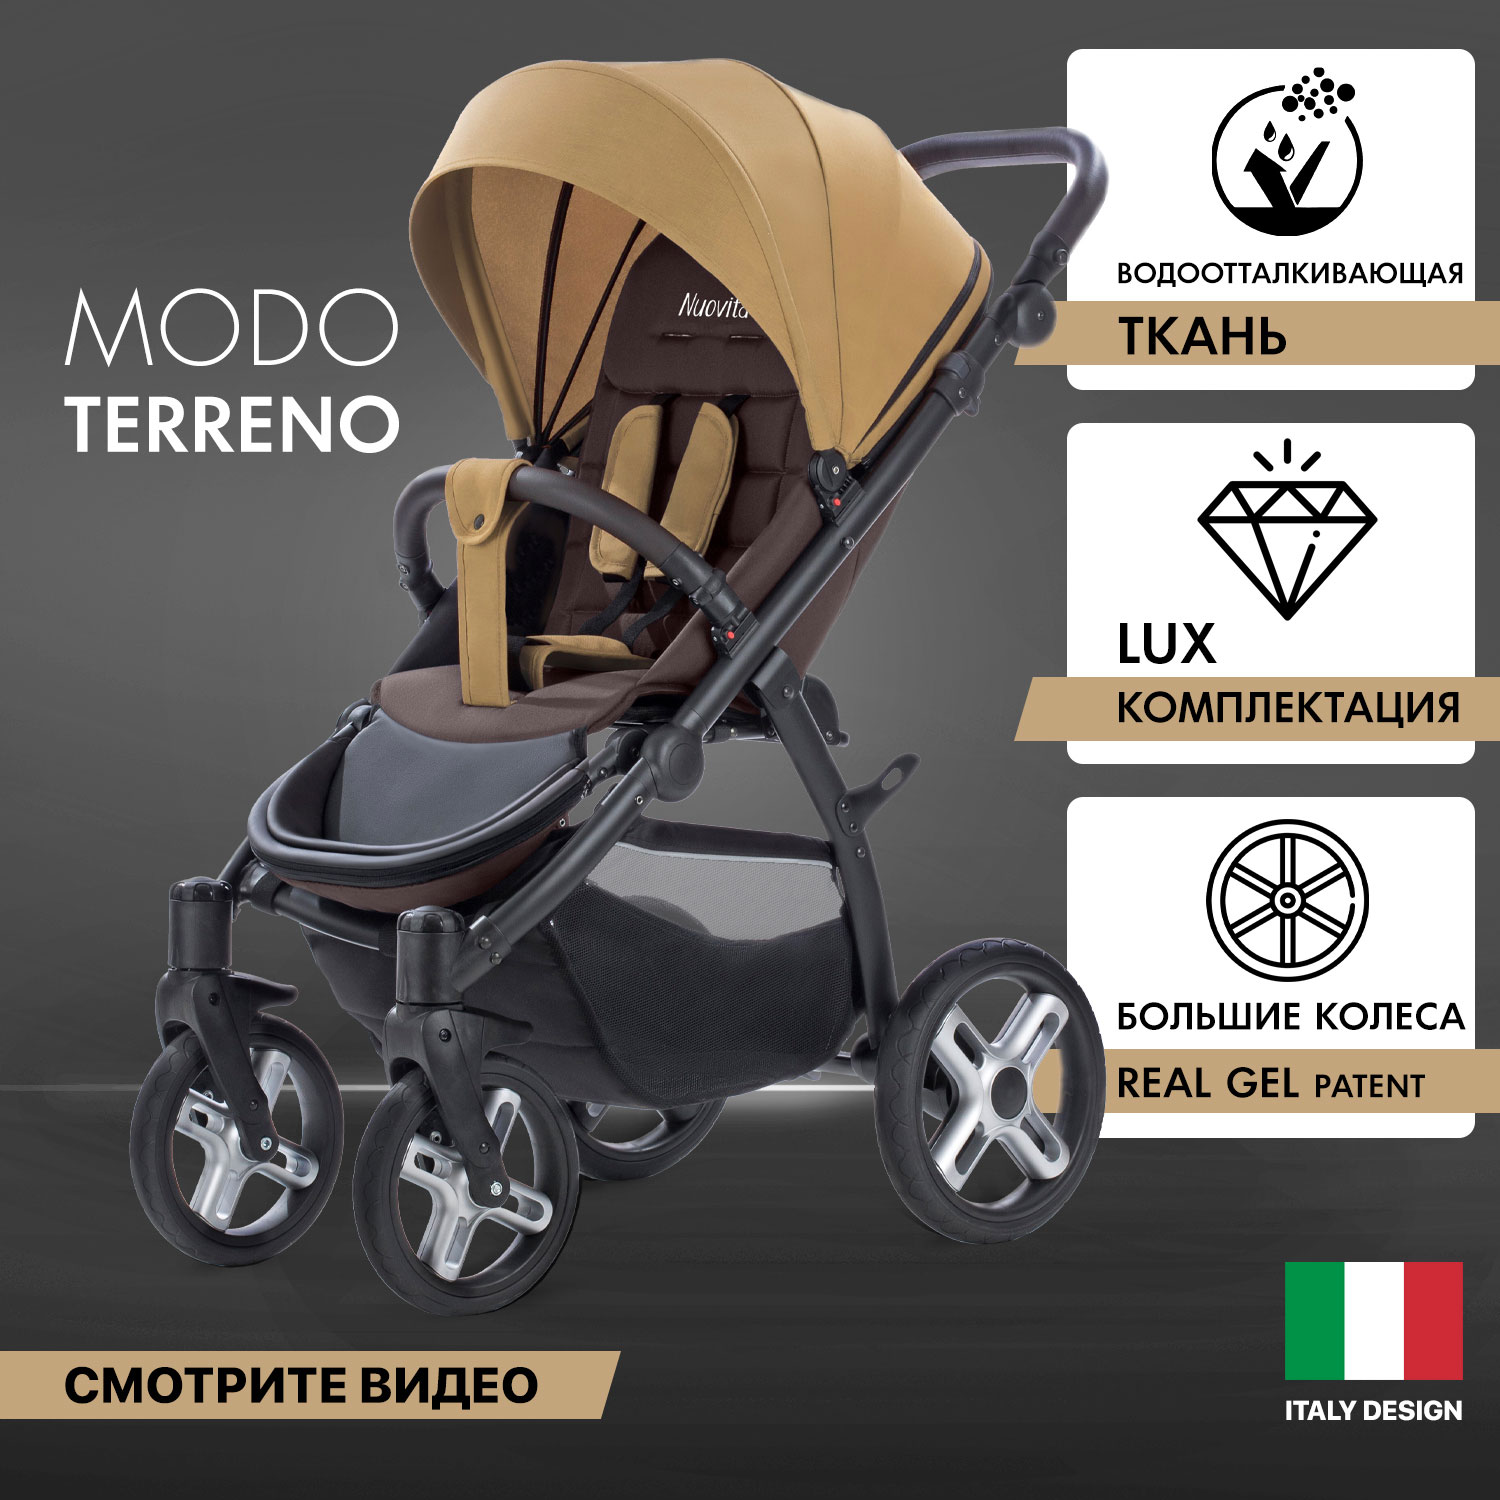 Прогулочная коляска Nuovita Modo Terreno Beige Marrone/Бежево-коричневый мягкий пол универсальный 60x60 бежево коричневый